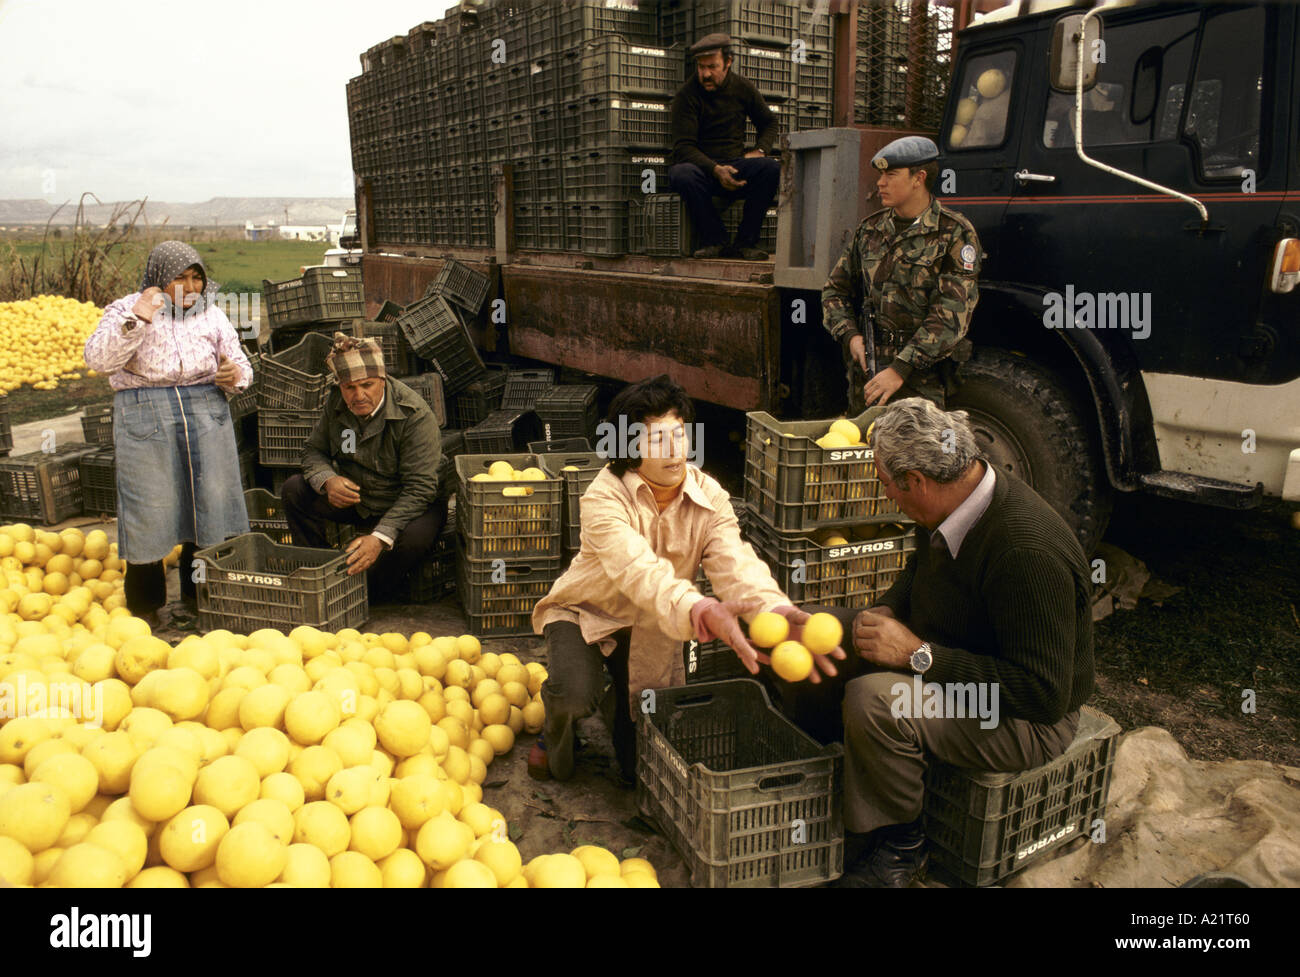 Landarbeiter Grapefruits in Kisten packen, auf Lastwagen, bewacht von bewaffneten UN-Truppen zu laden. Grüne Linie, Zypern. Stockfoto